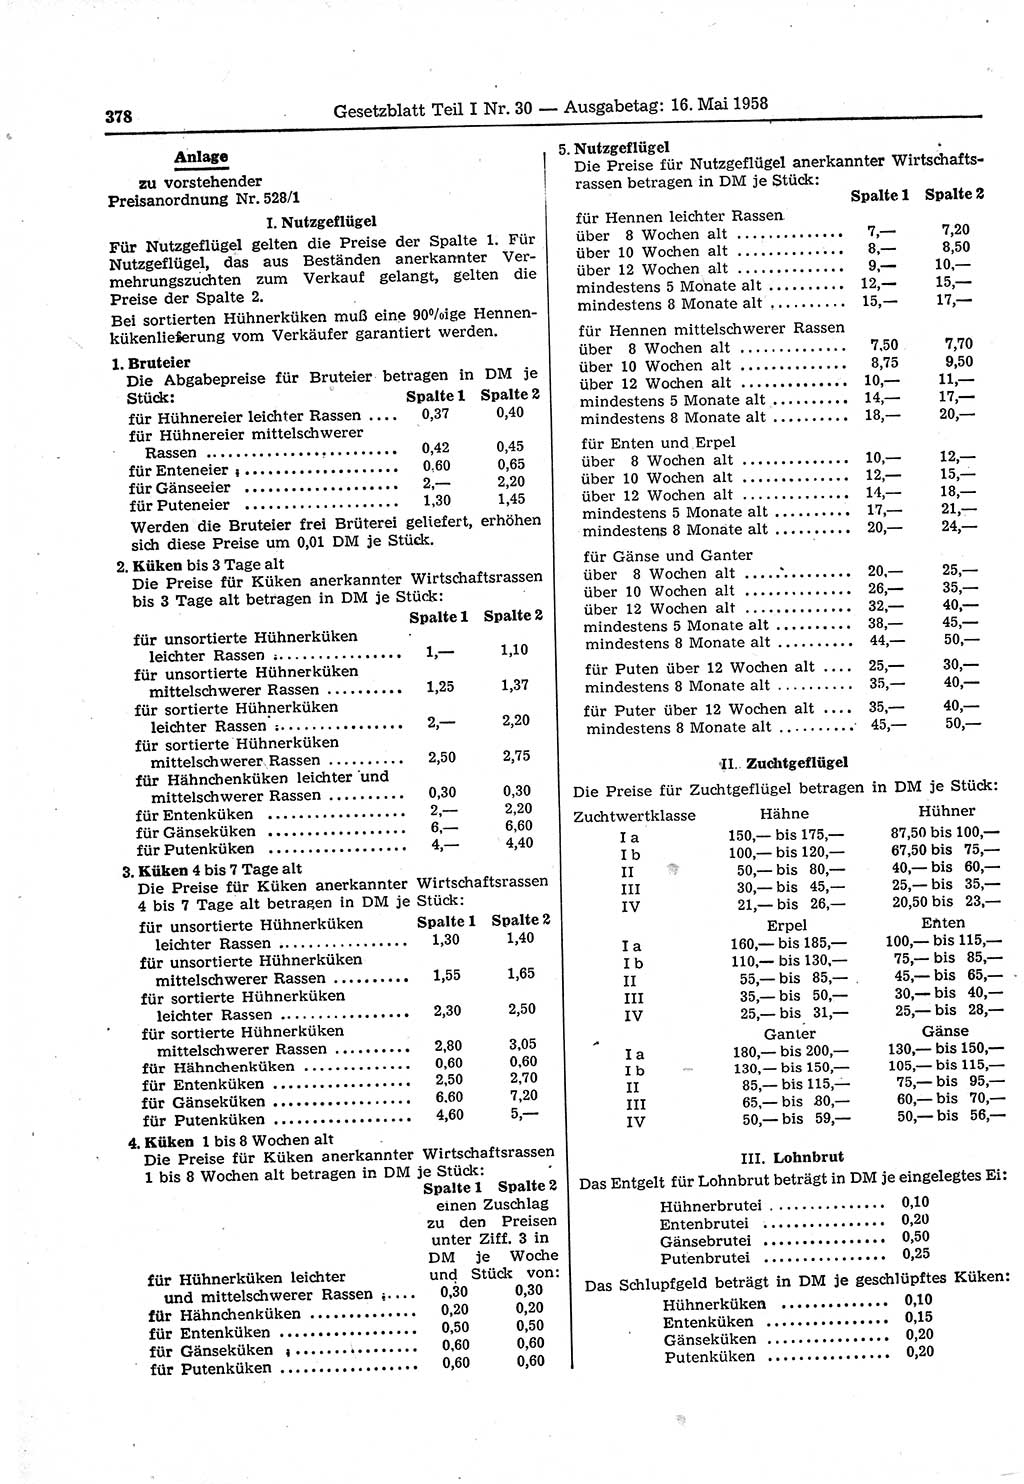 Gesetzblatt (GBl.) der Deutschen Demokratischen Republik (DDR) Teil Ⅰ 1958, Seite 378 (GBl. DDR Ⅰ 1958, S. 378)